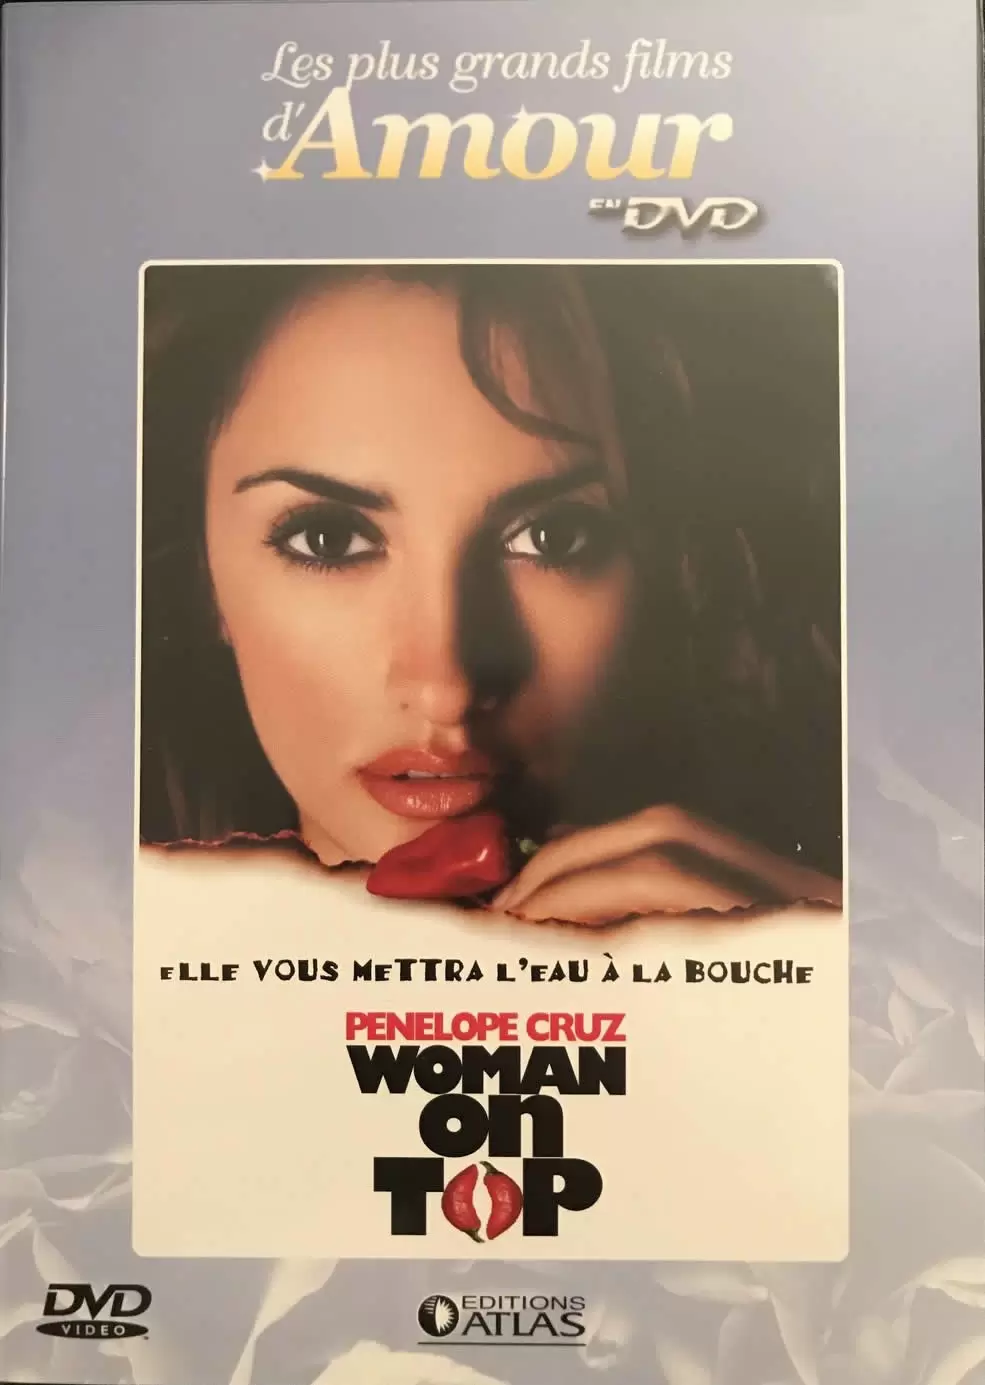 Les plus grands films d\'amour en DVD - Woman on top